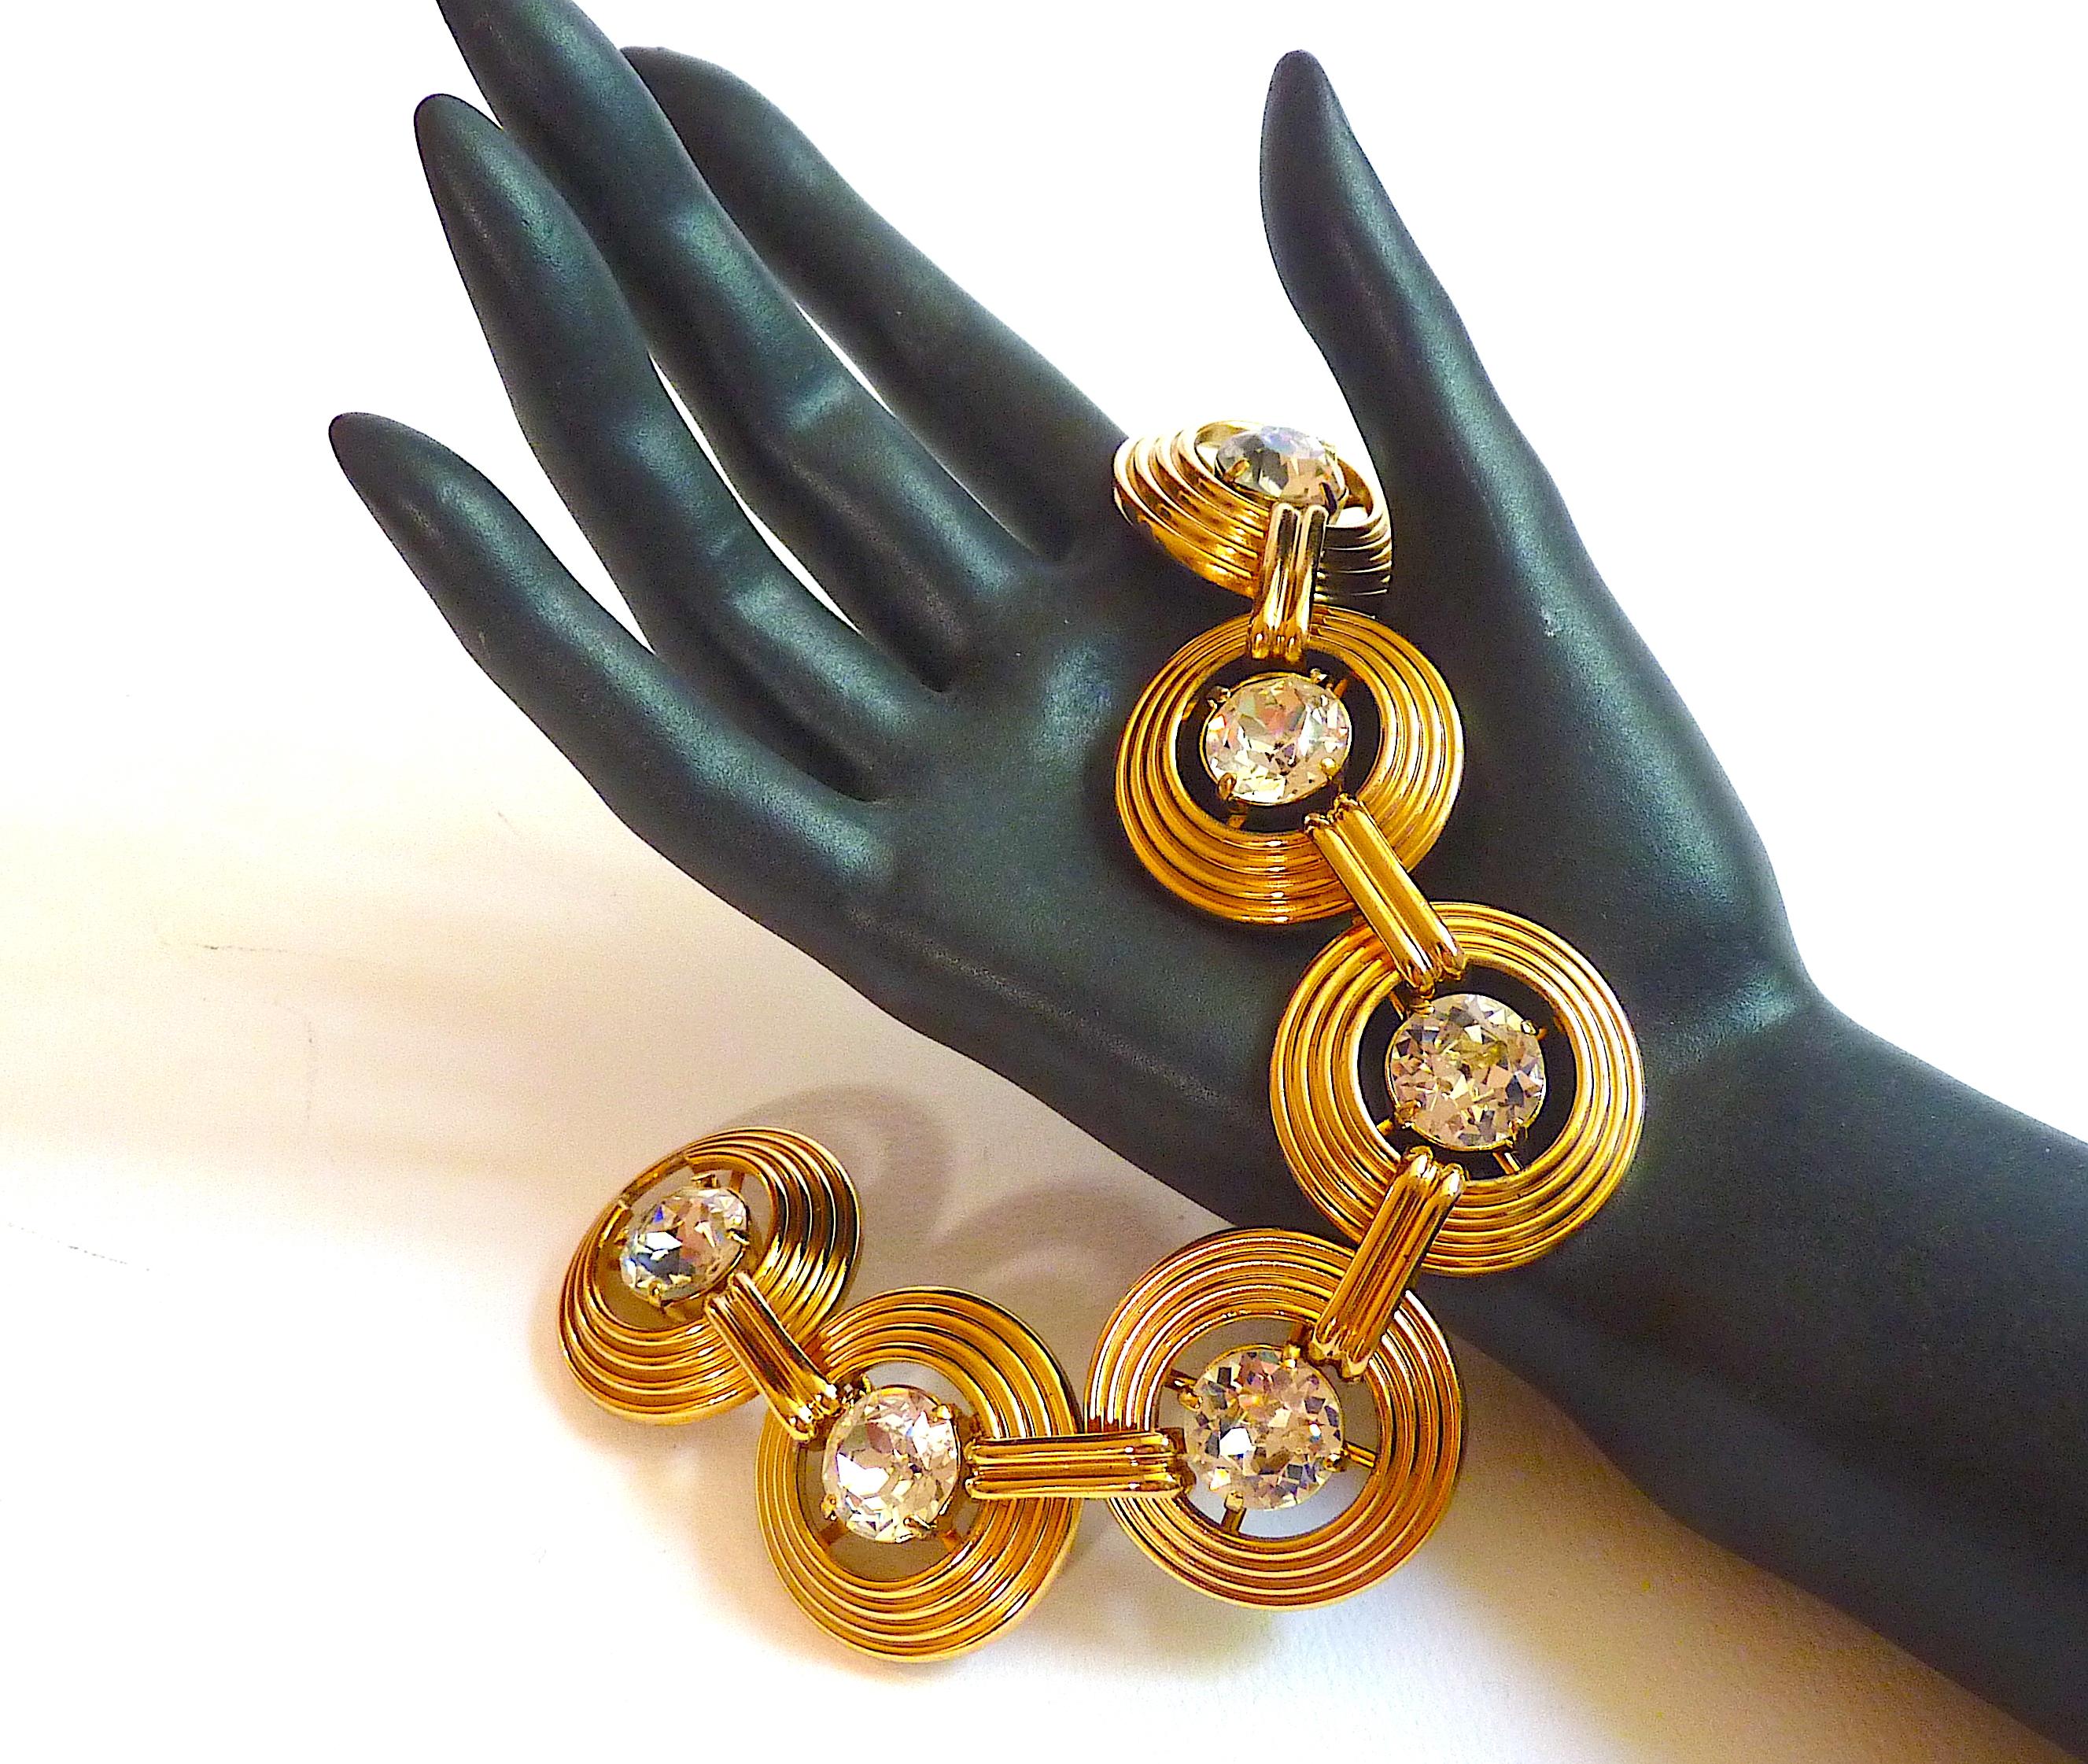 Bracelet CHRISTIAN DIOR, style Art of Vintage, composé de maillons en métal doré ornés de larges cabochons en cristal clair, Vintage des années 70

Signé Chr. Dior Allemagne à l'intérieur du fermoir. Jusque dans les années 1980, les bijoux Dior